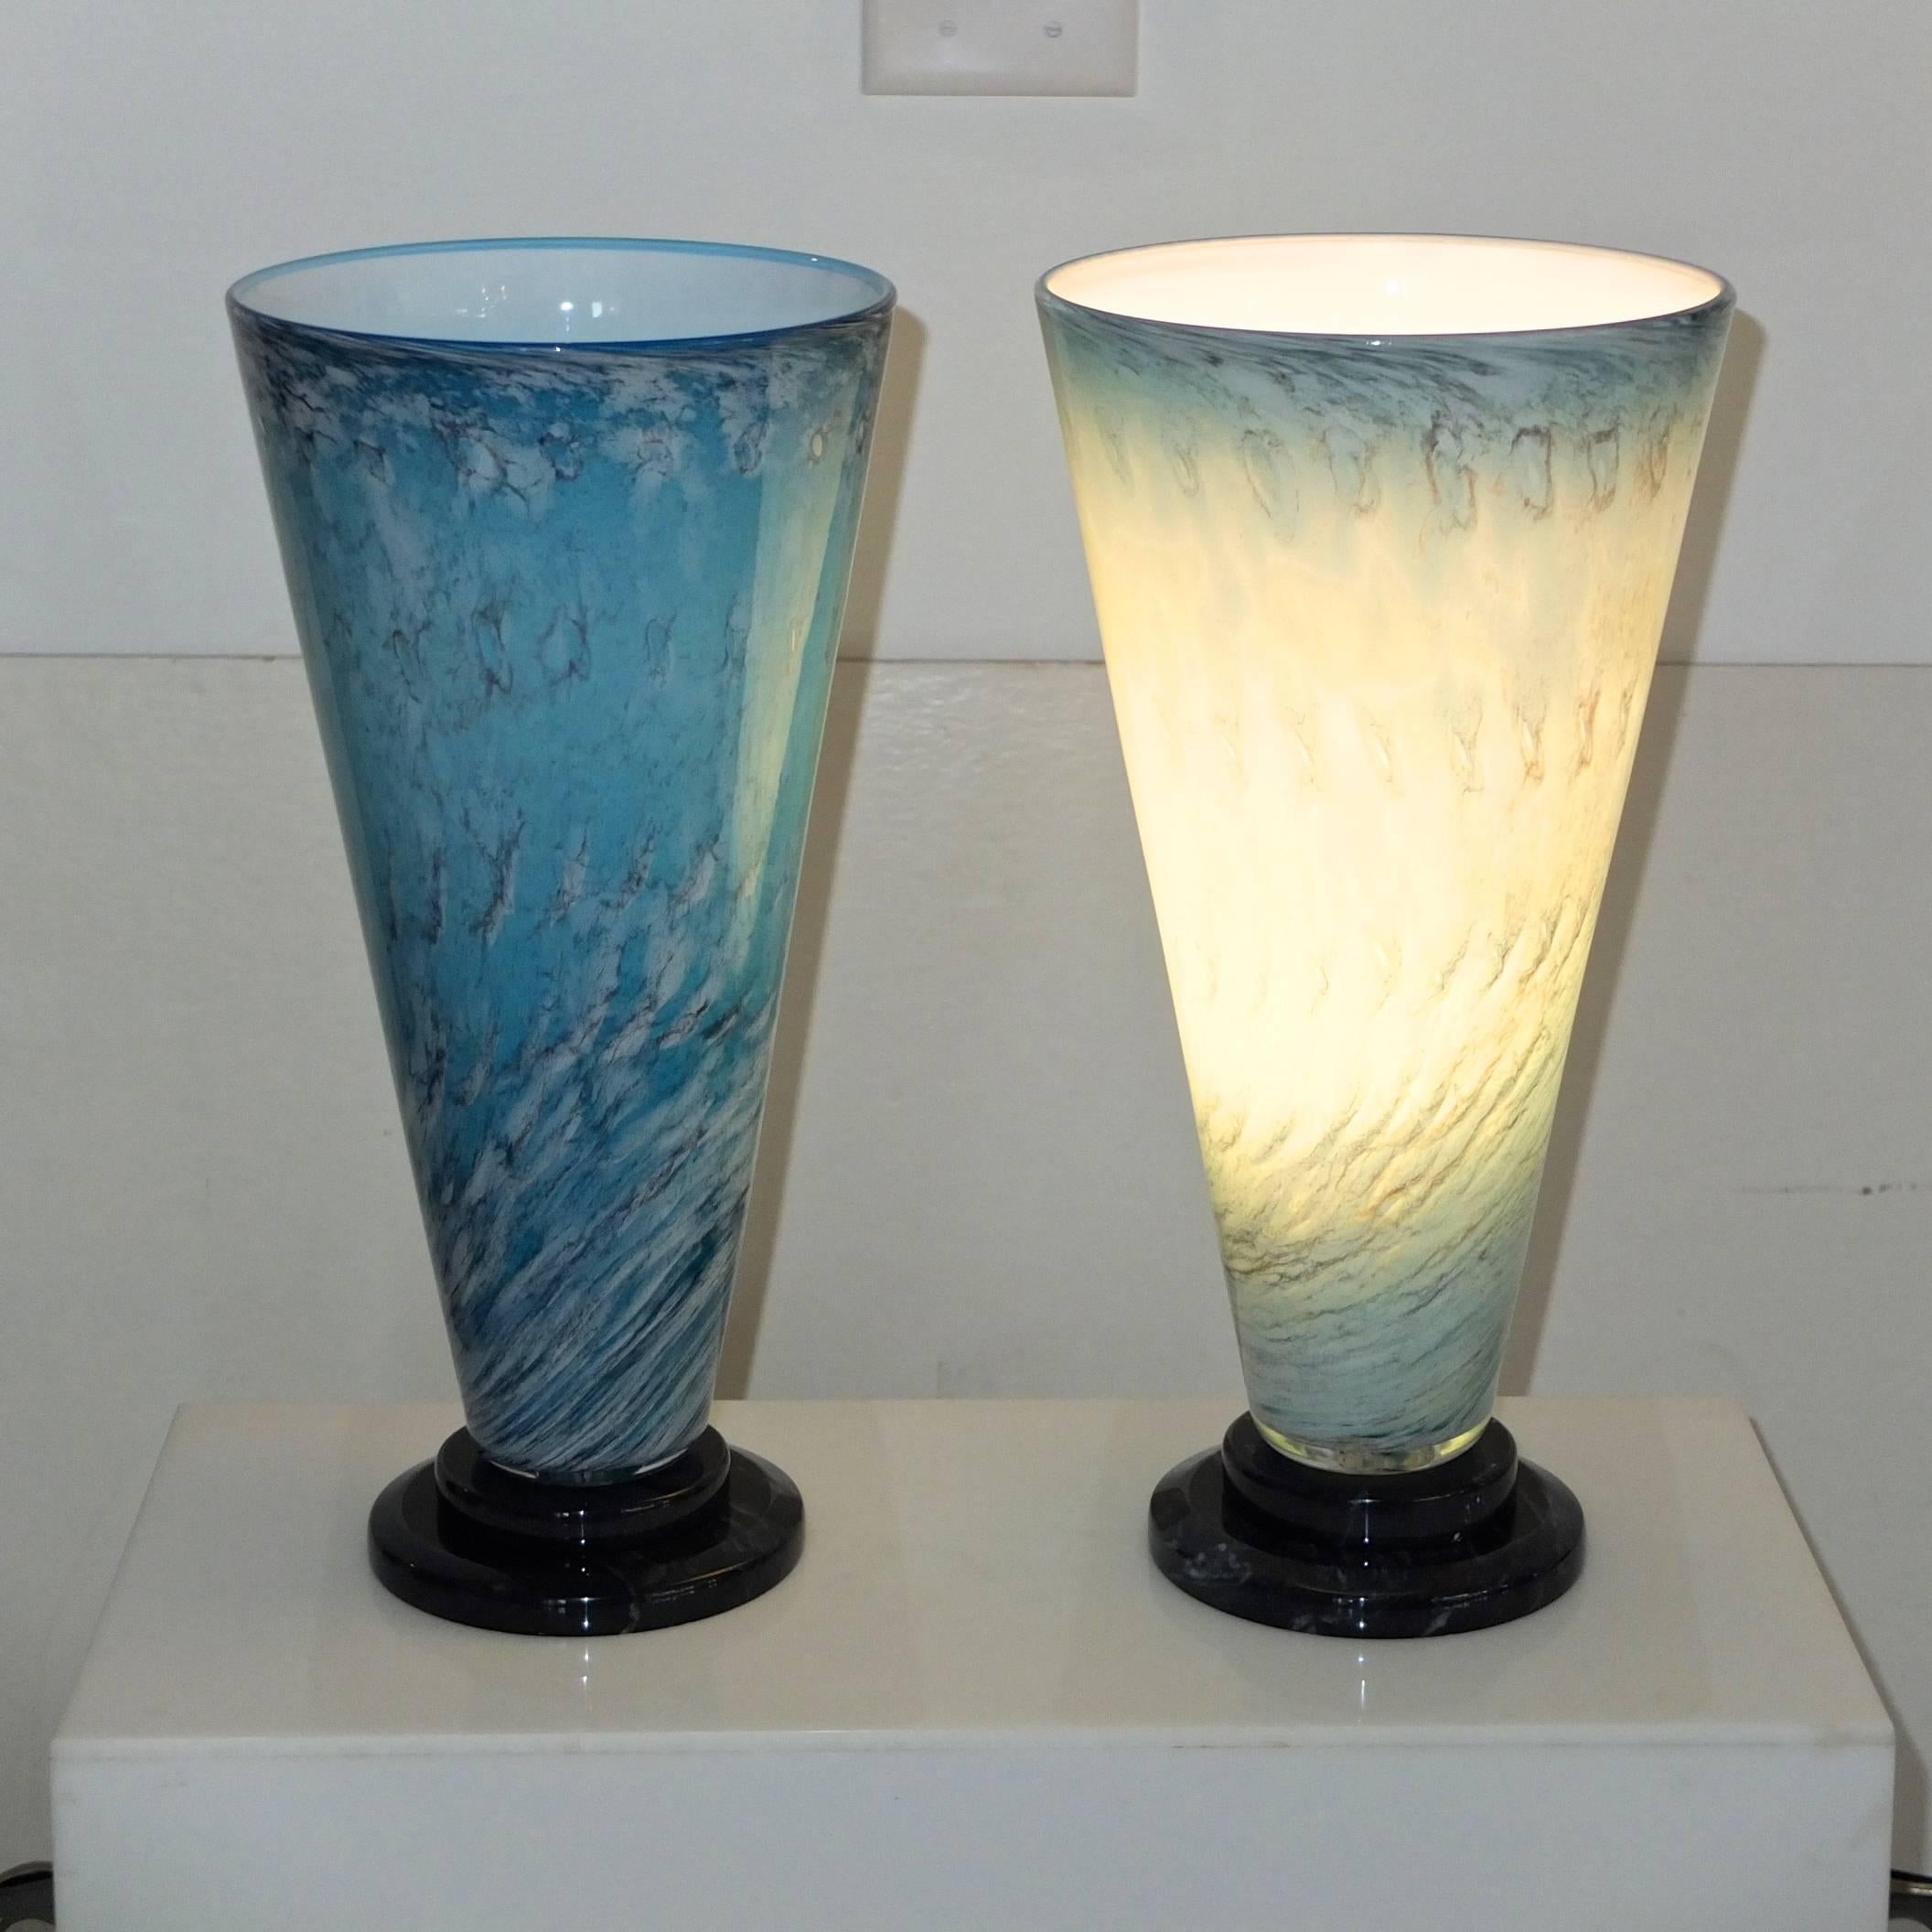 Großformatige, mundgeblasene, kegelförmige Kunstglaslampen auf runden, schwarzen, abgestuften Marmorsockeln, hergestellt von Glass Light Studio, signiert 1989. Die V-lite hat eine Fassung für eine dimmbare Standard-Glühbirne mit bis zu 100 Watt. Mit